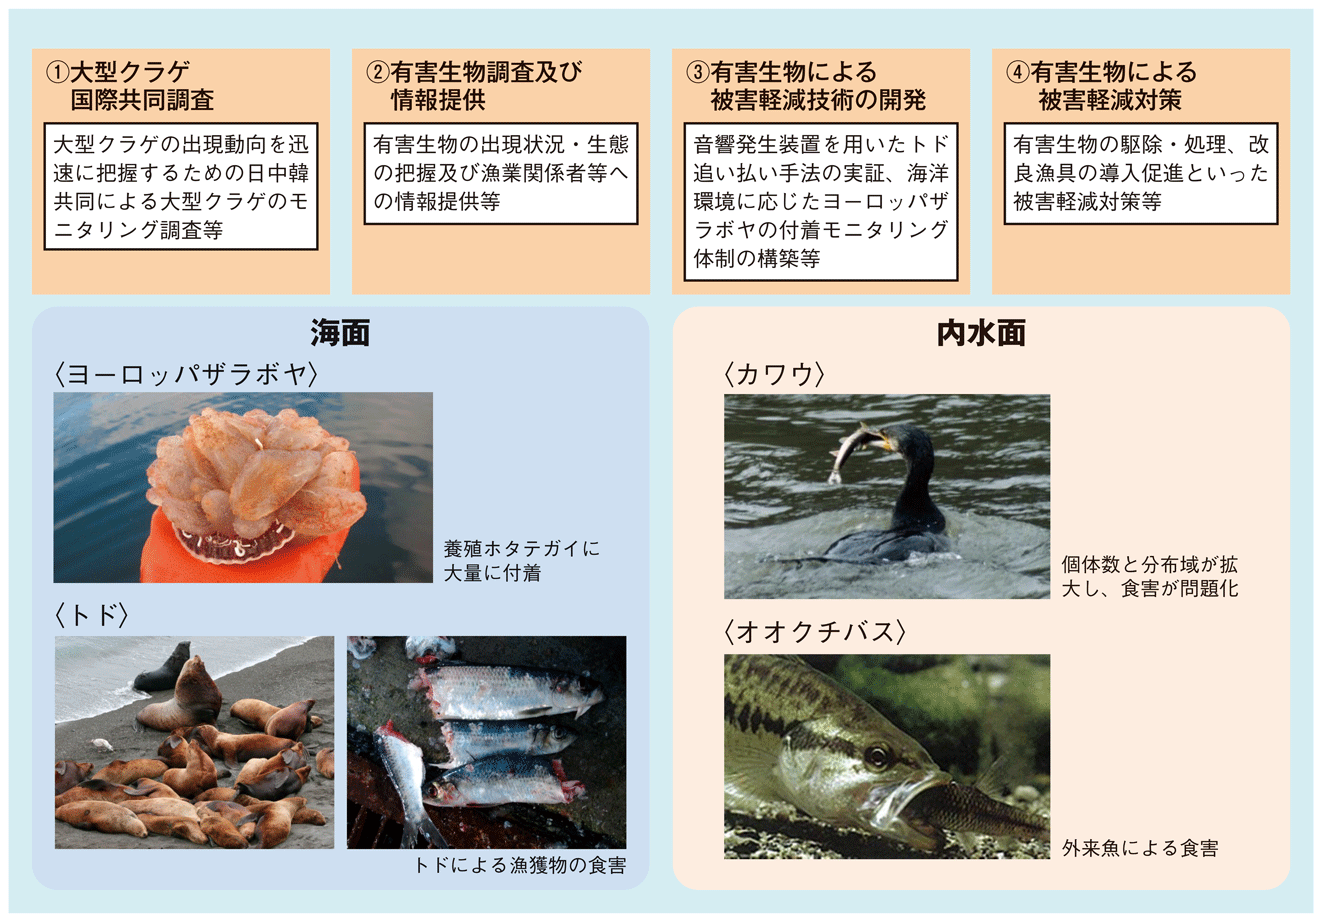 図1-16 国が行う野生生物による漁業被害対策の例